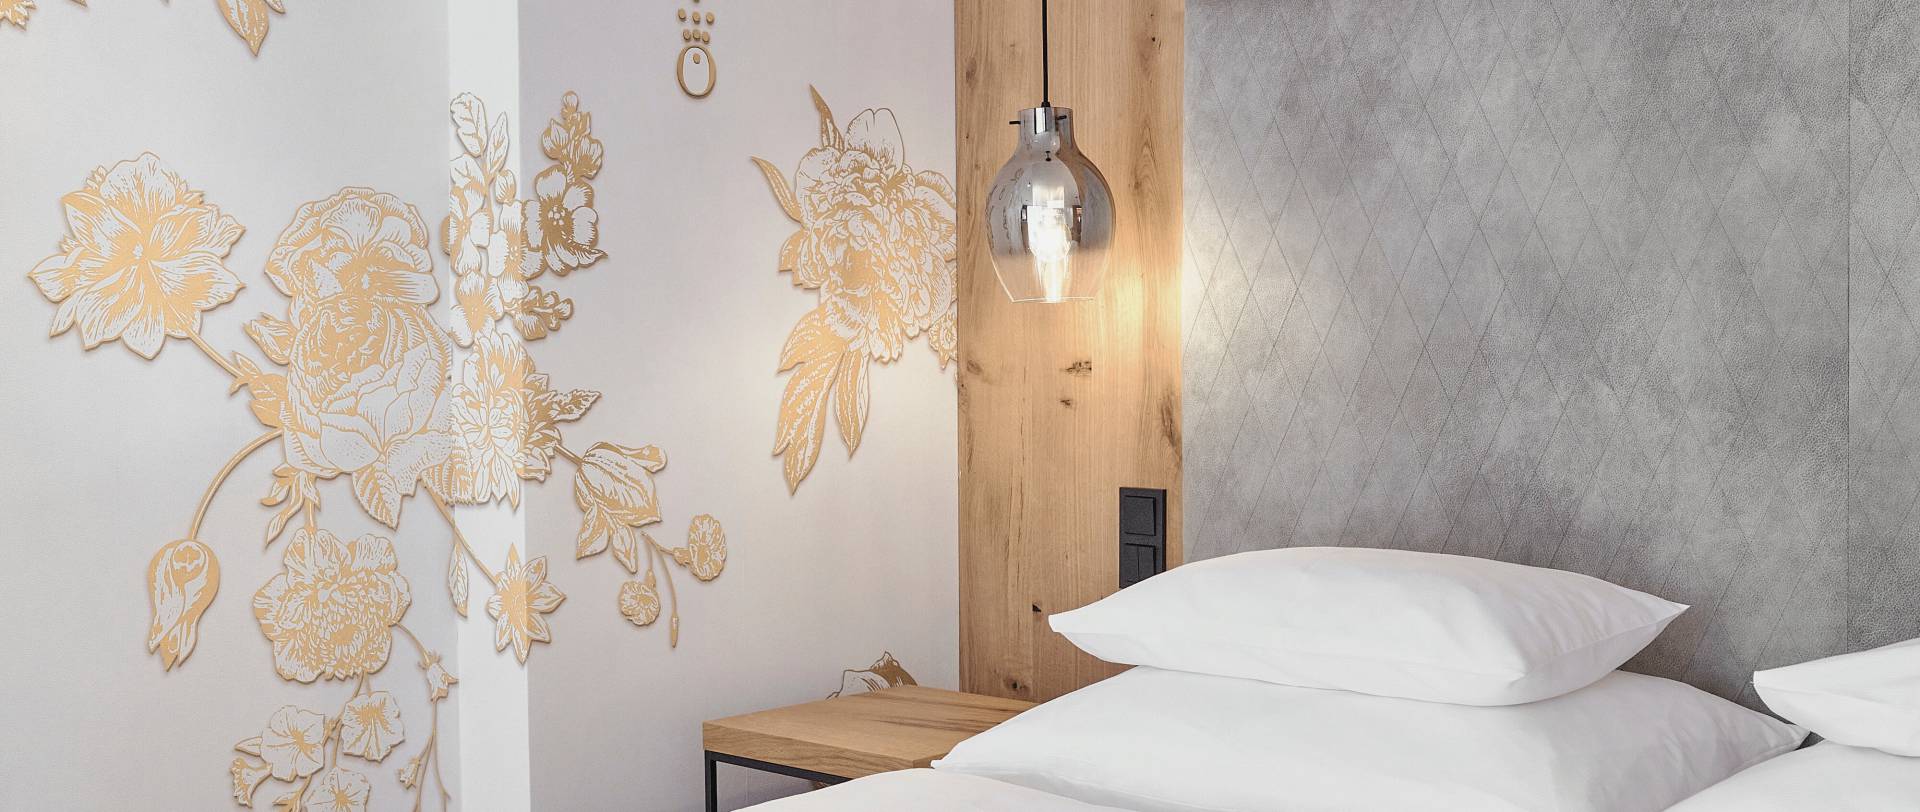  Bett im Hotelzimmer der HOCHKÖNIGIN mit stylischen Lampen und edler Tapete mit goldenen Blumen